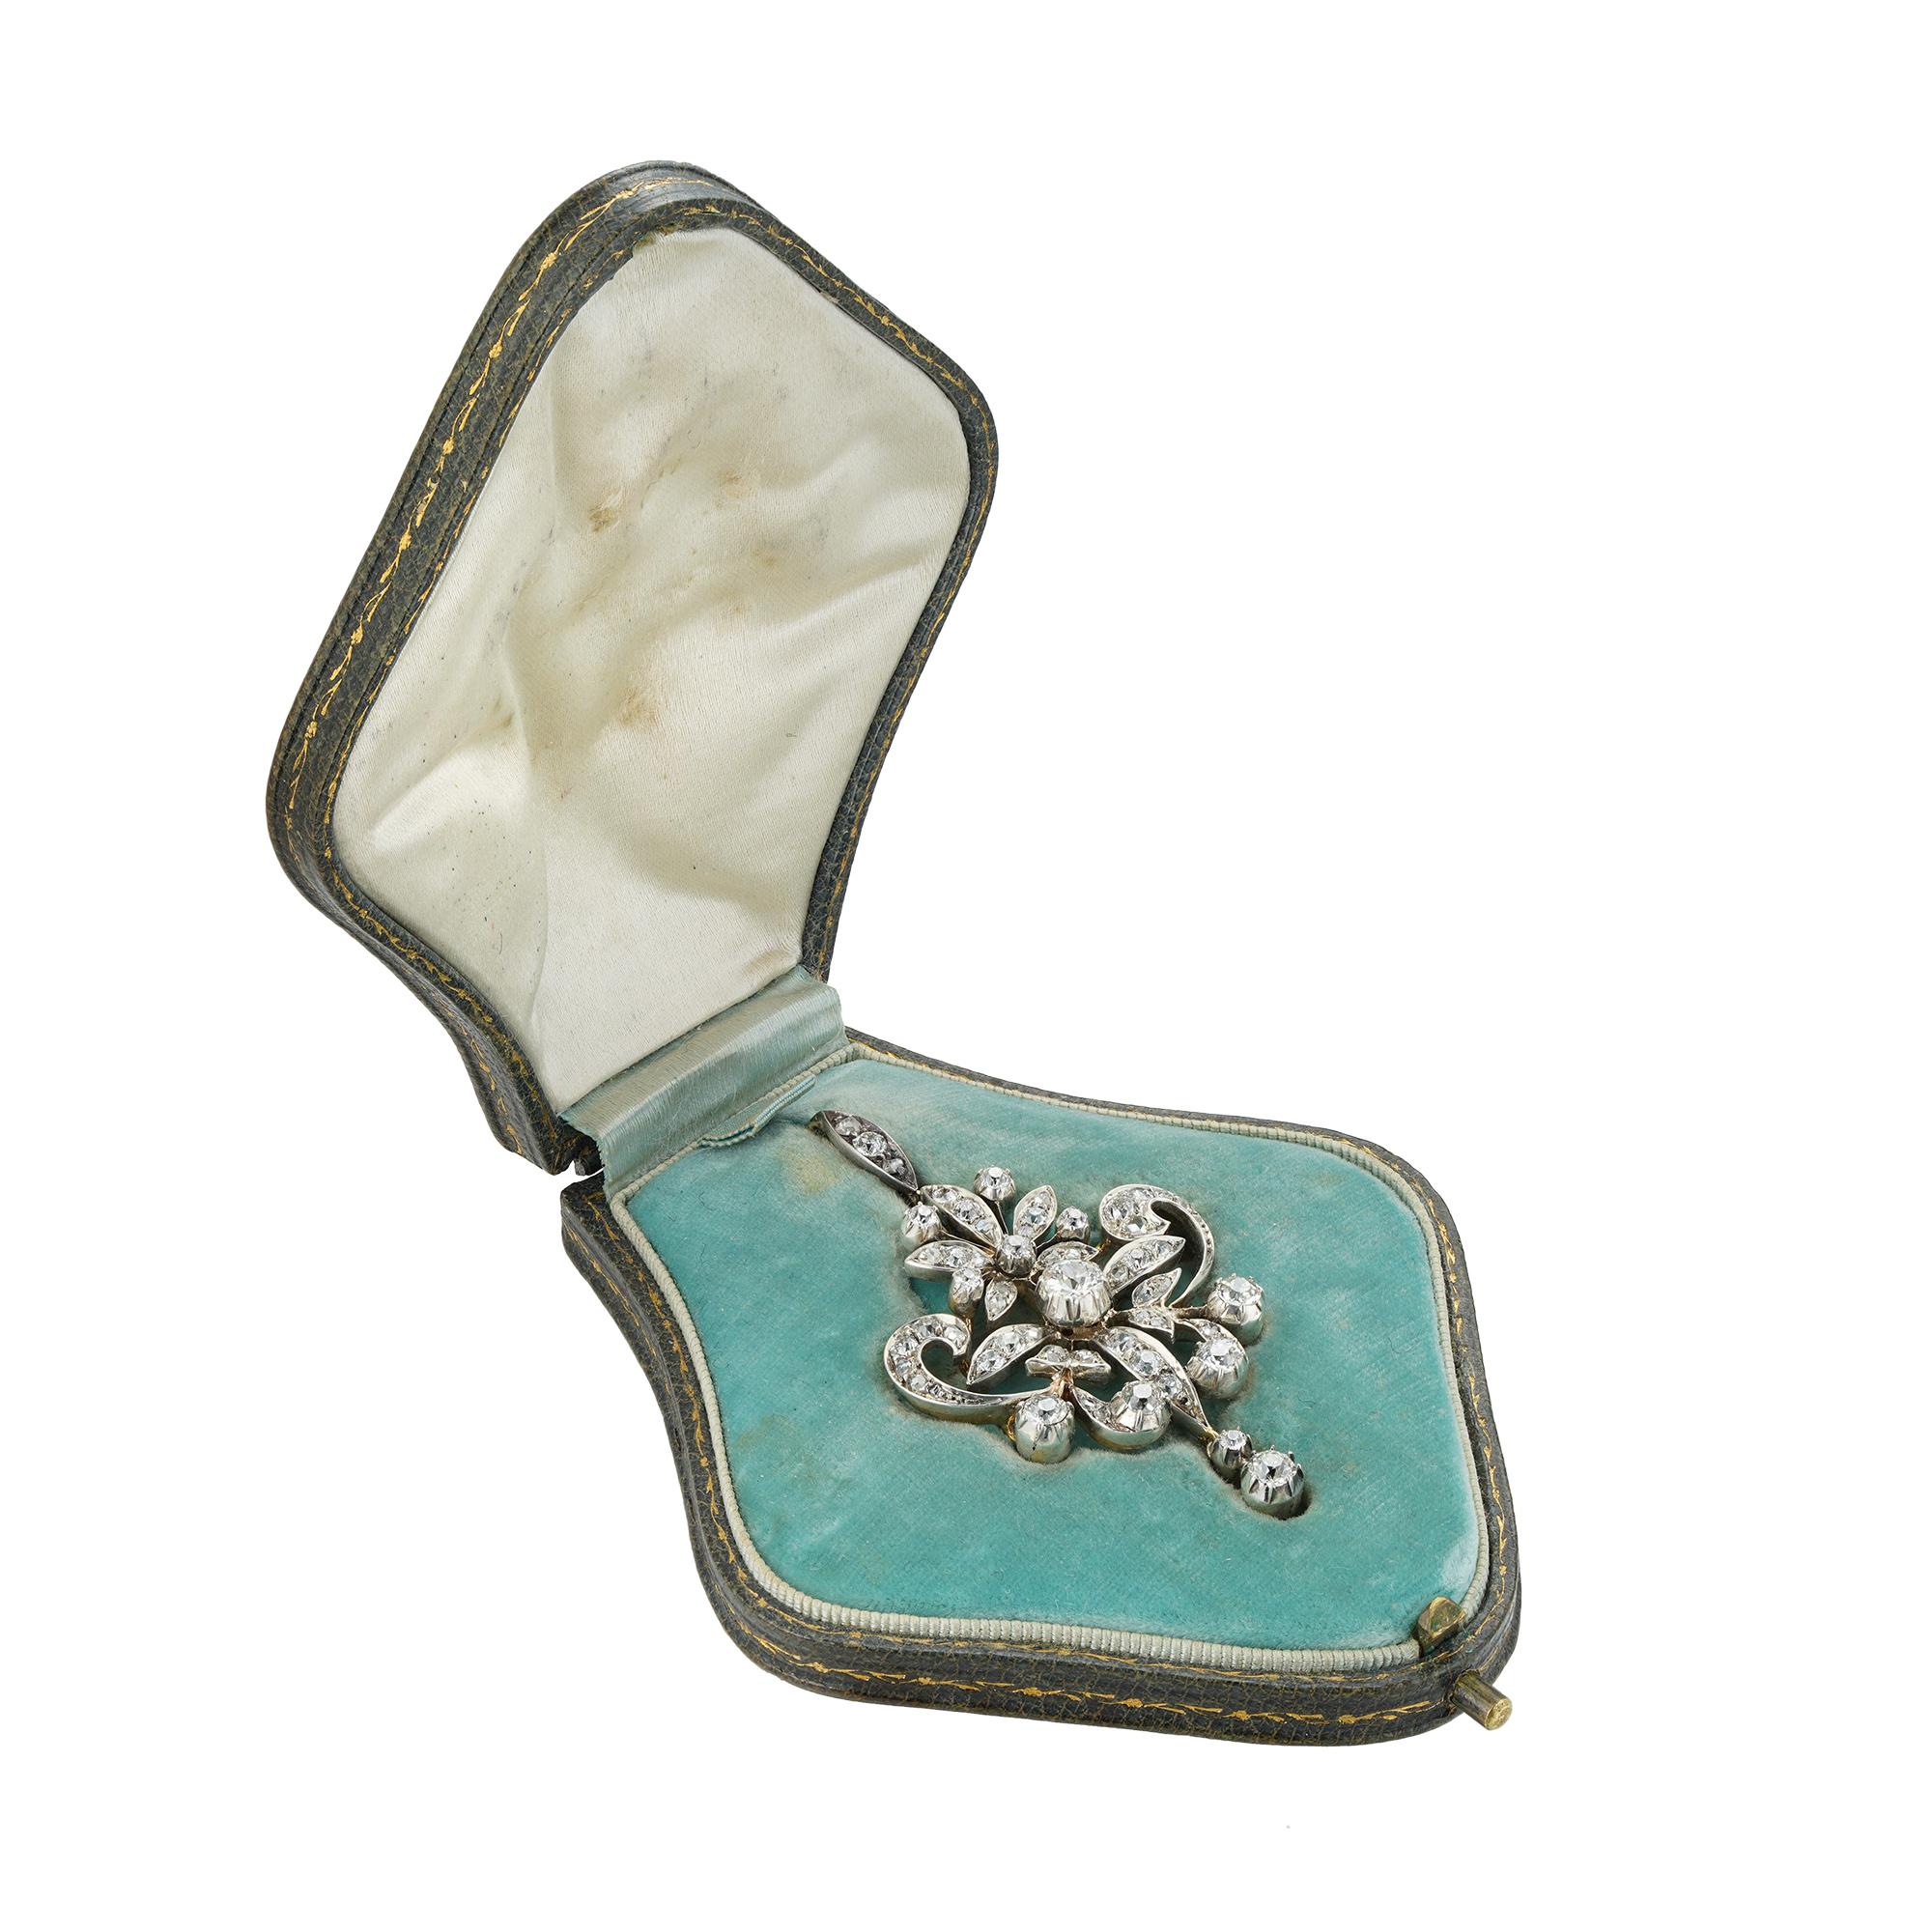 Broche/pendentif de la fin de l'époque victorienne, serti de diamants de taille ancienne et de diamants taillés en rose, dans un motif ajouré de feuillage et de volutes, suspendu à une goutte sertie de diamants, avec une attache détachable sertie de